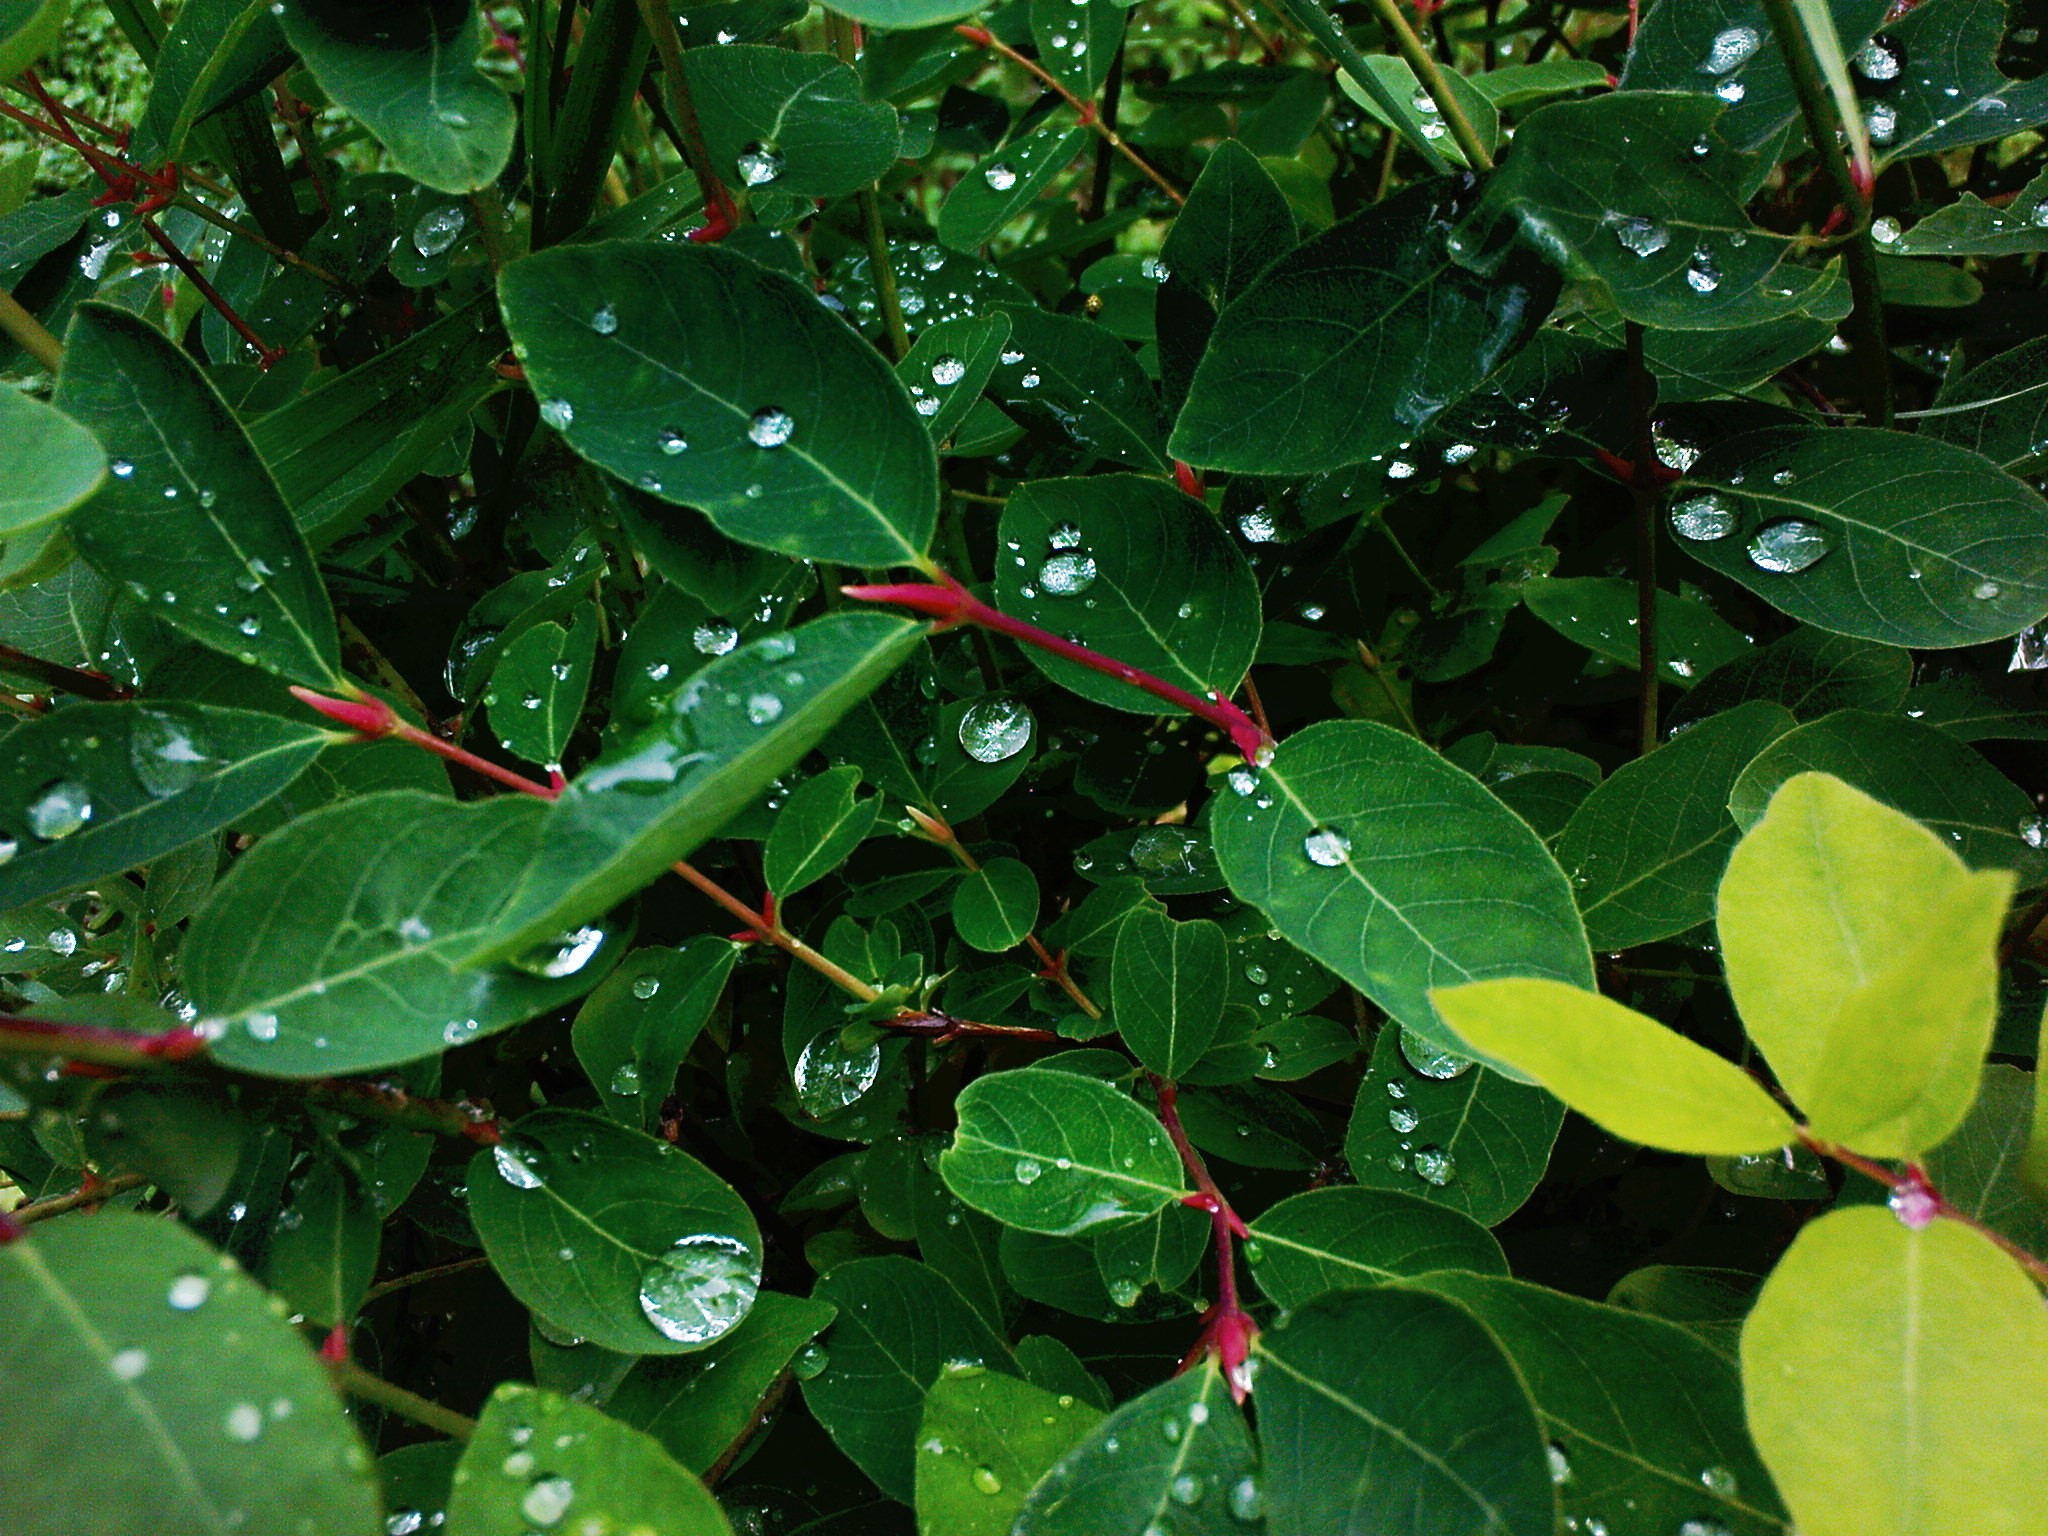 A bush leaf photo